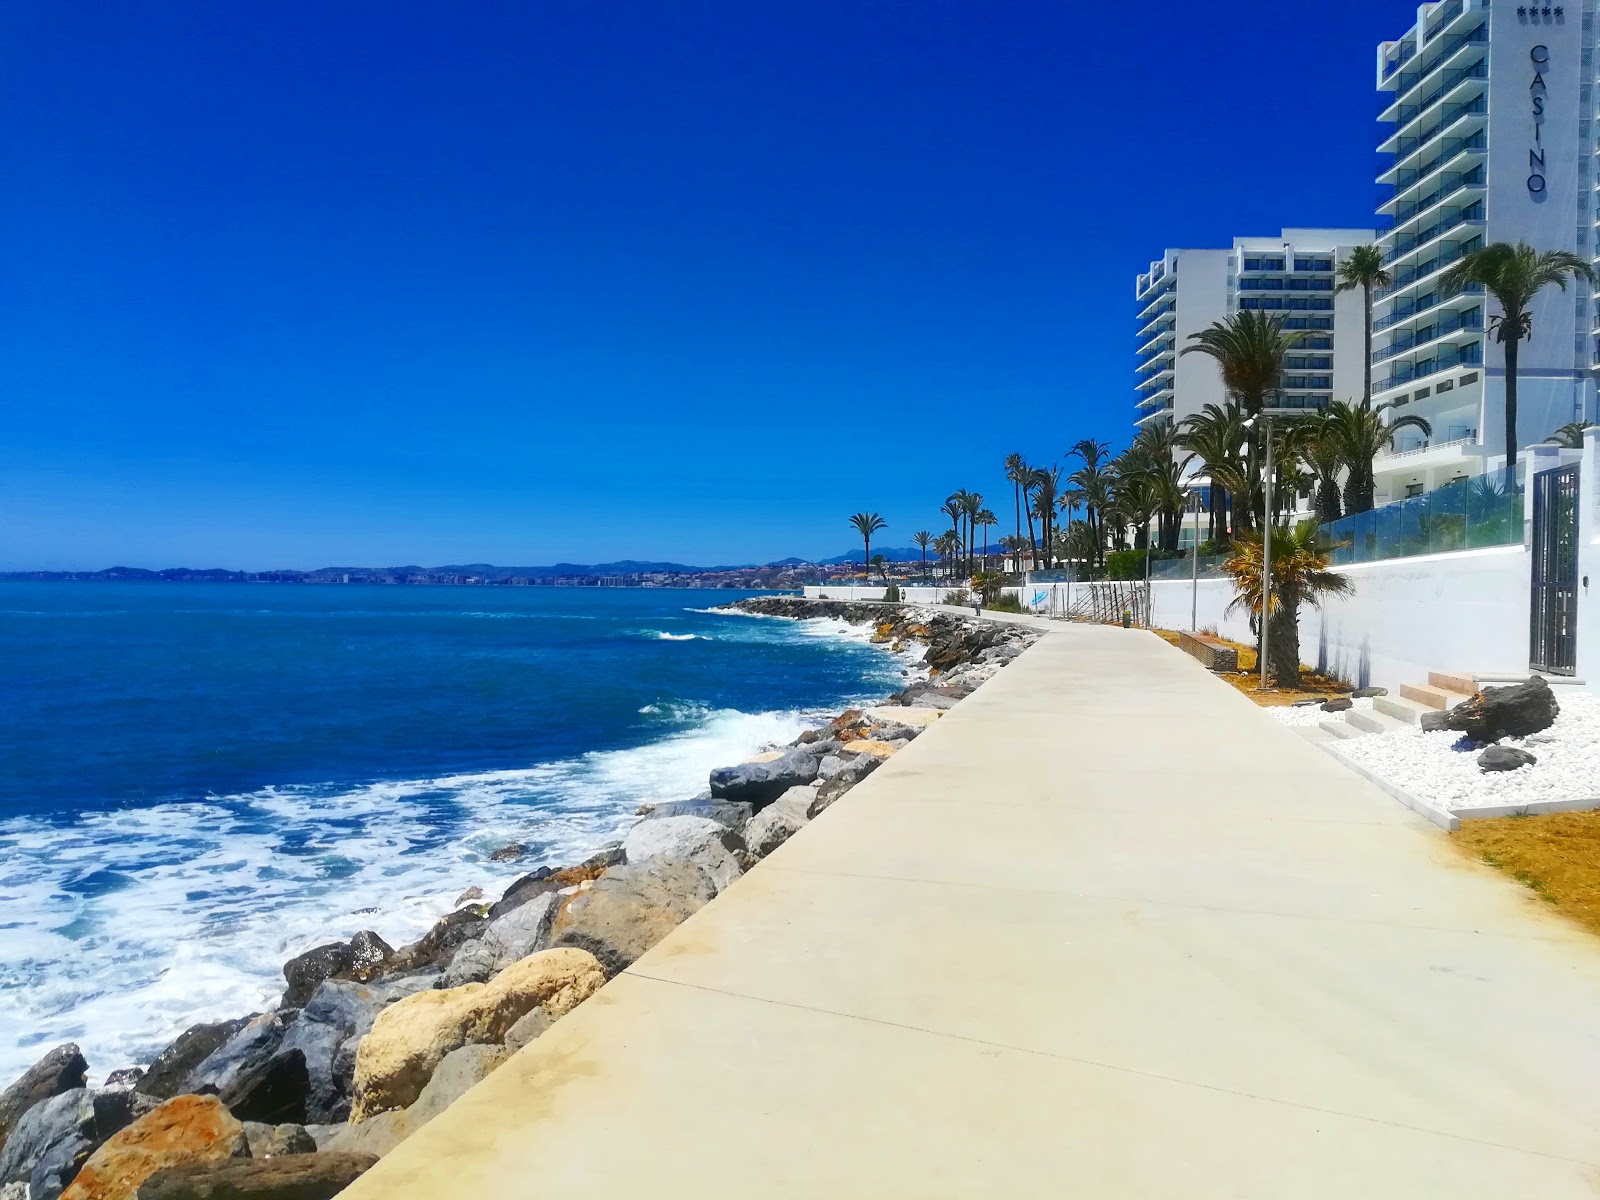 Playa Torrevigia'in fotoğrafı doğrudan plaj ile birlikte